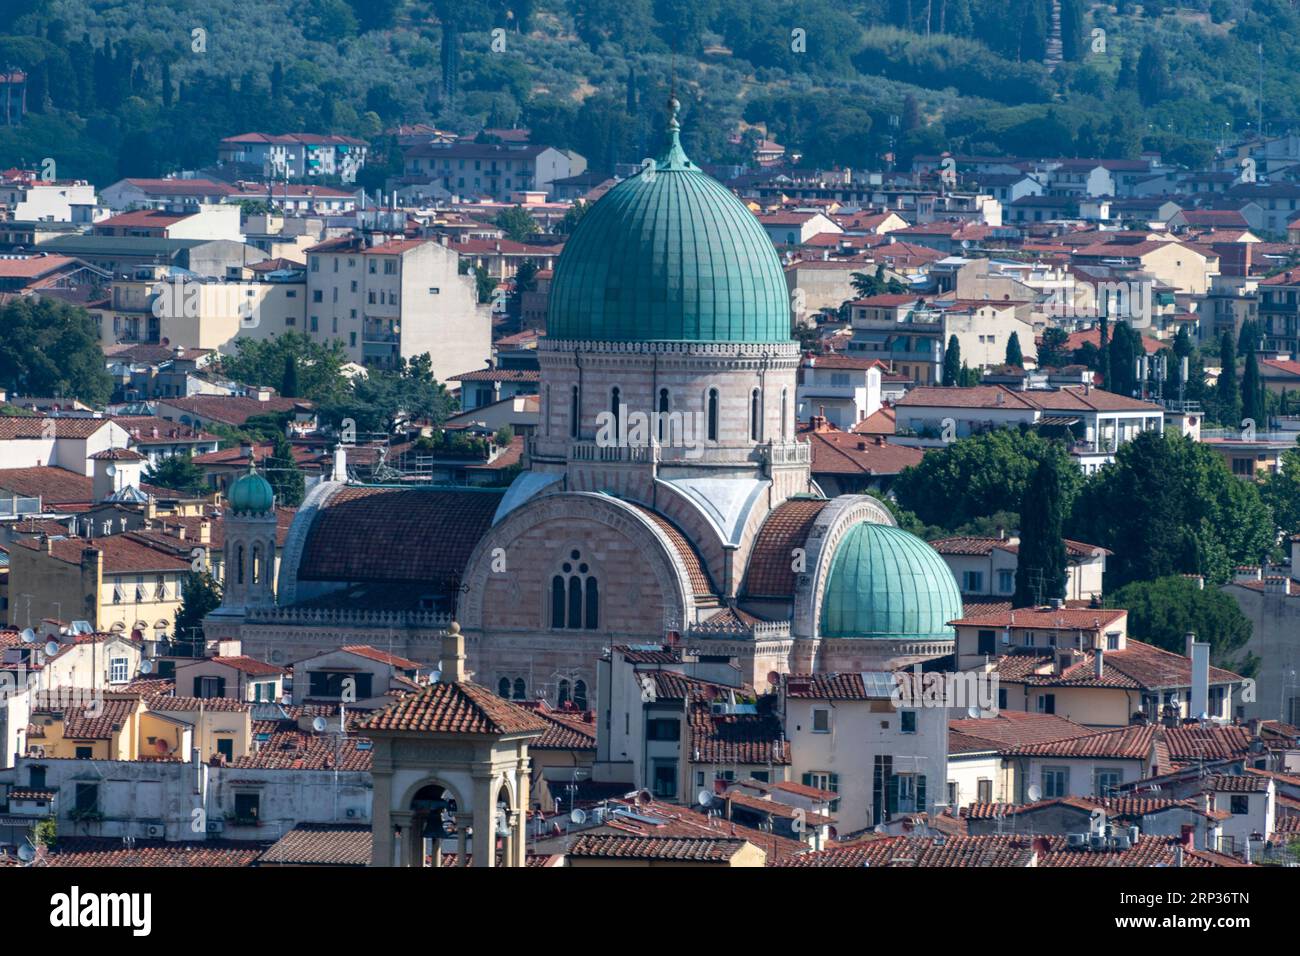 La cupola verde della Sinagoga e Museo Ebraico (Sinagoga e Museo Ebraico di Firenze) spicca nello skyline della città di Firenze. Si trova in via lui Foto Stock